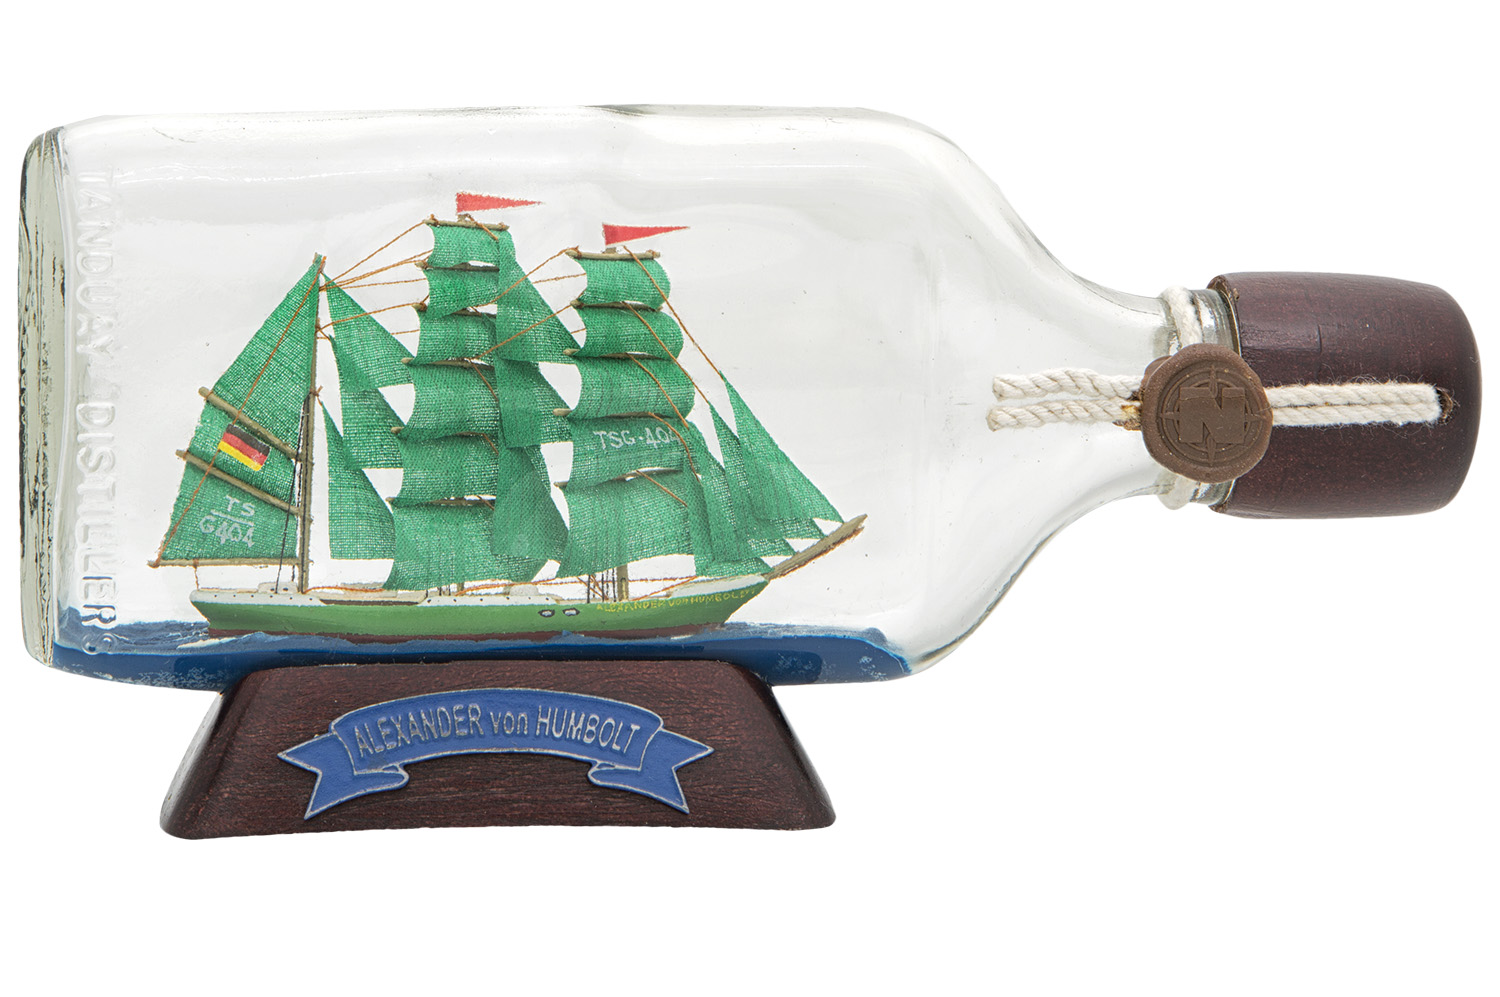 Flaschenschiff, A. v. Humboldt, 250ml, Premium Flaschenschiffe, Flaschenschiffe, Maritime Klassiker